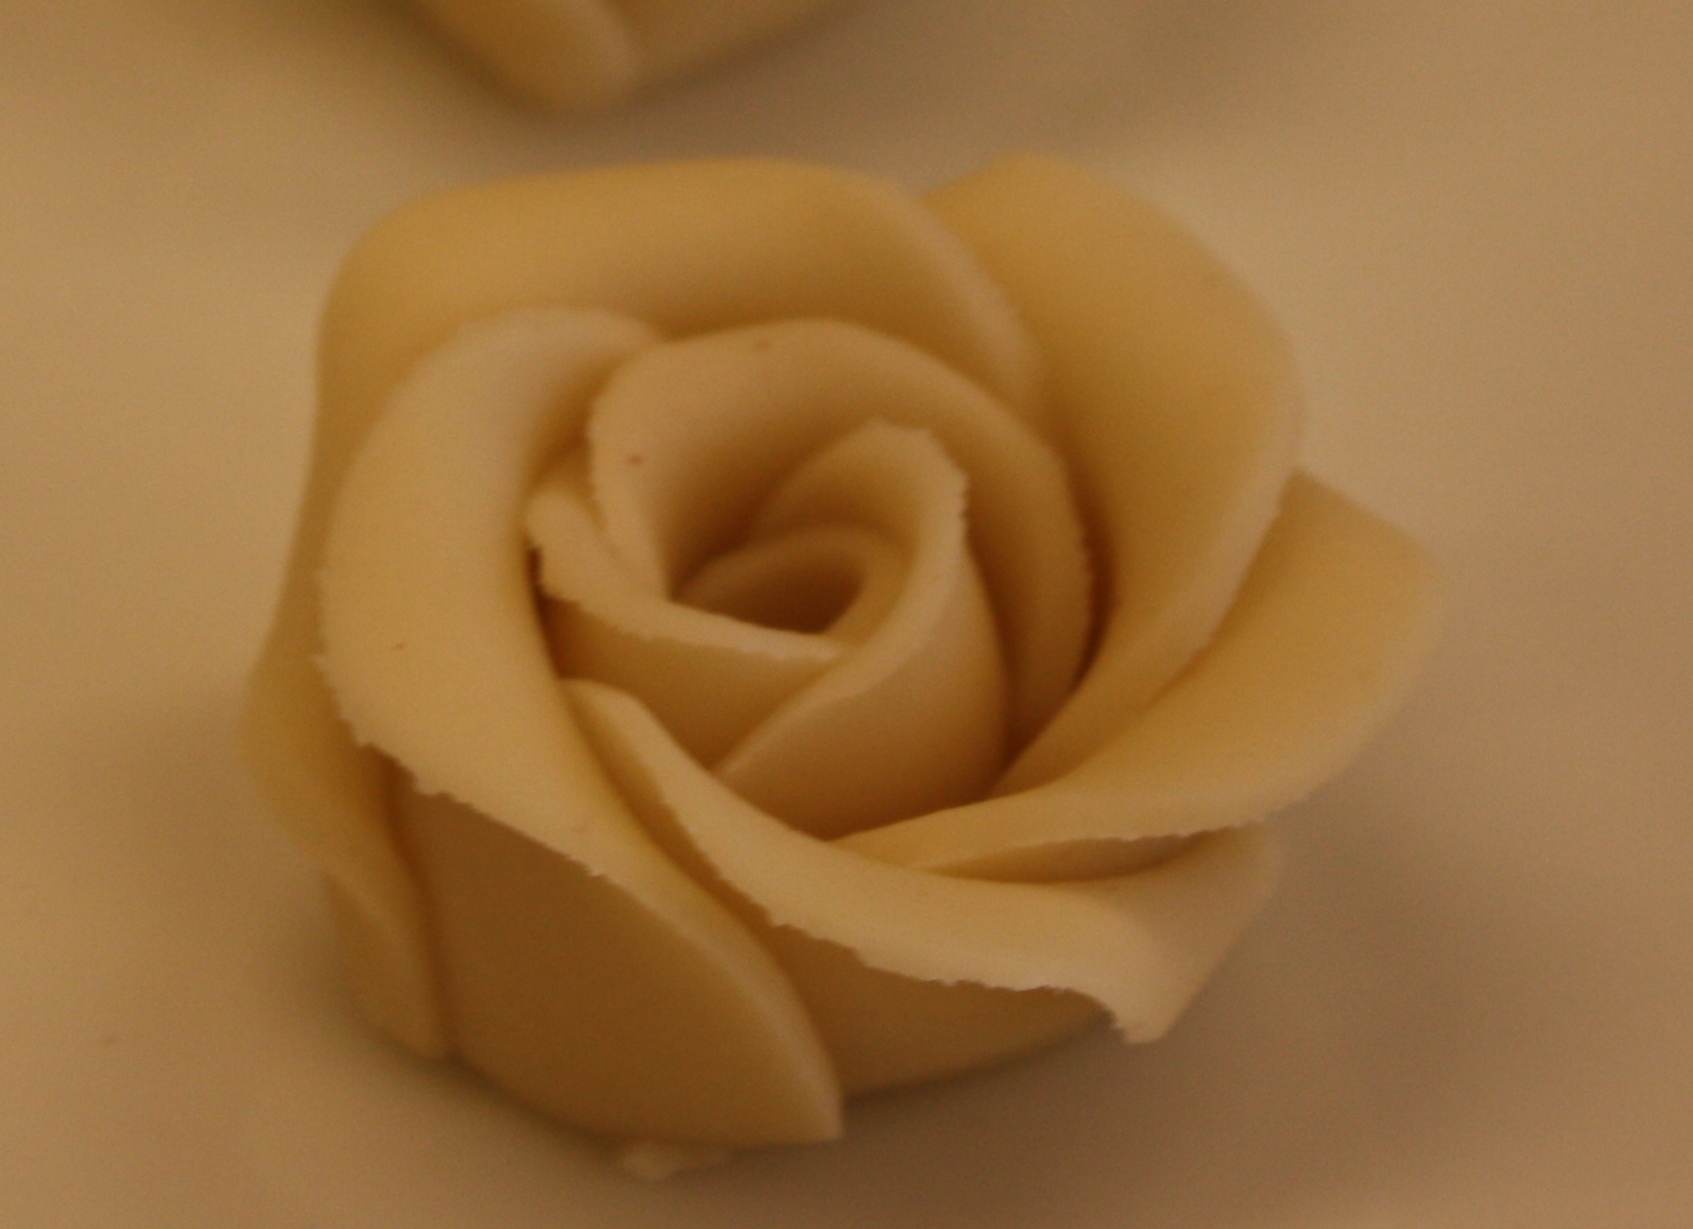 Marsipan rose 